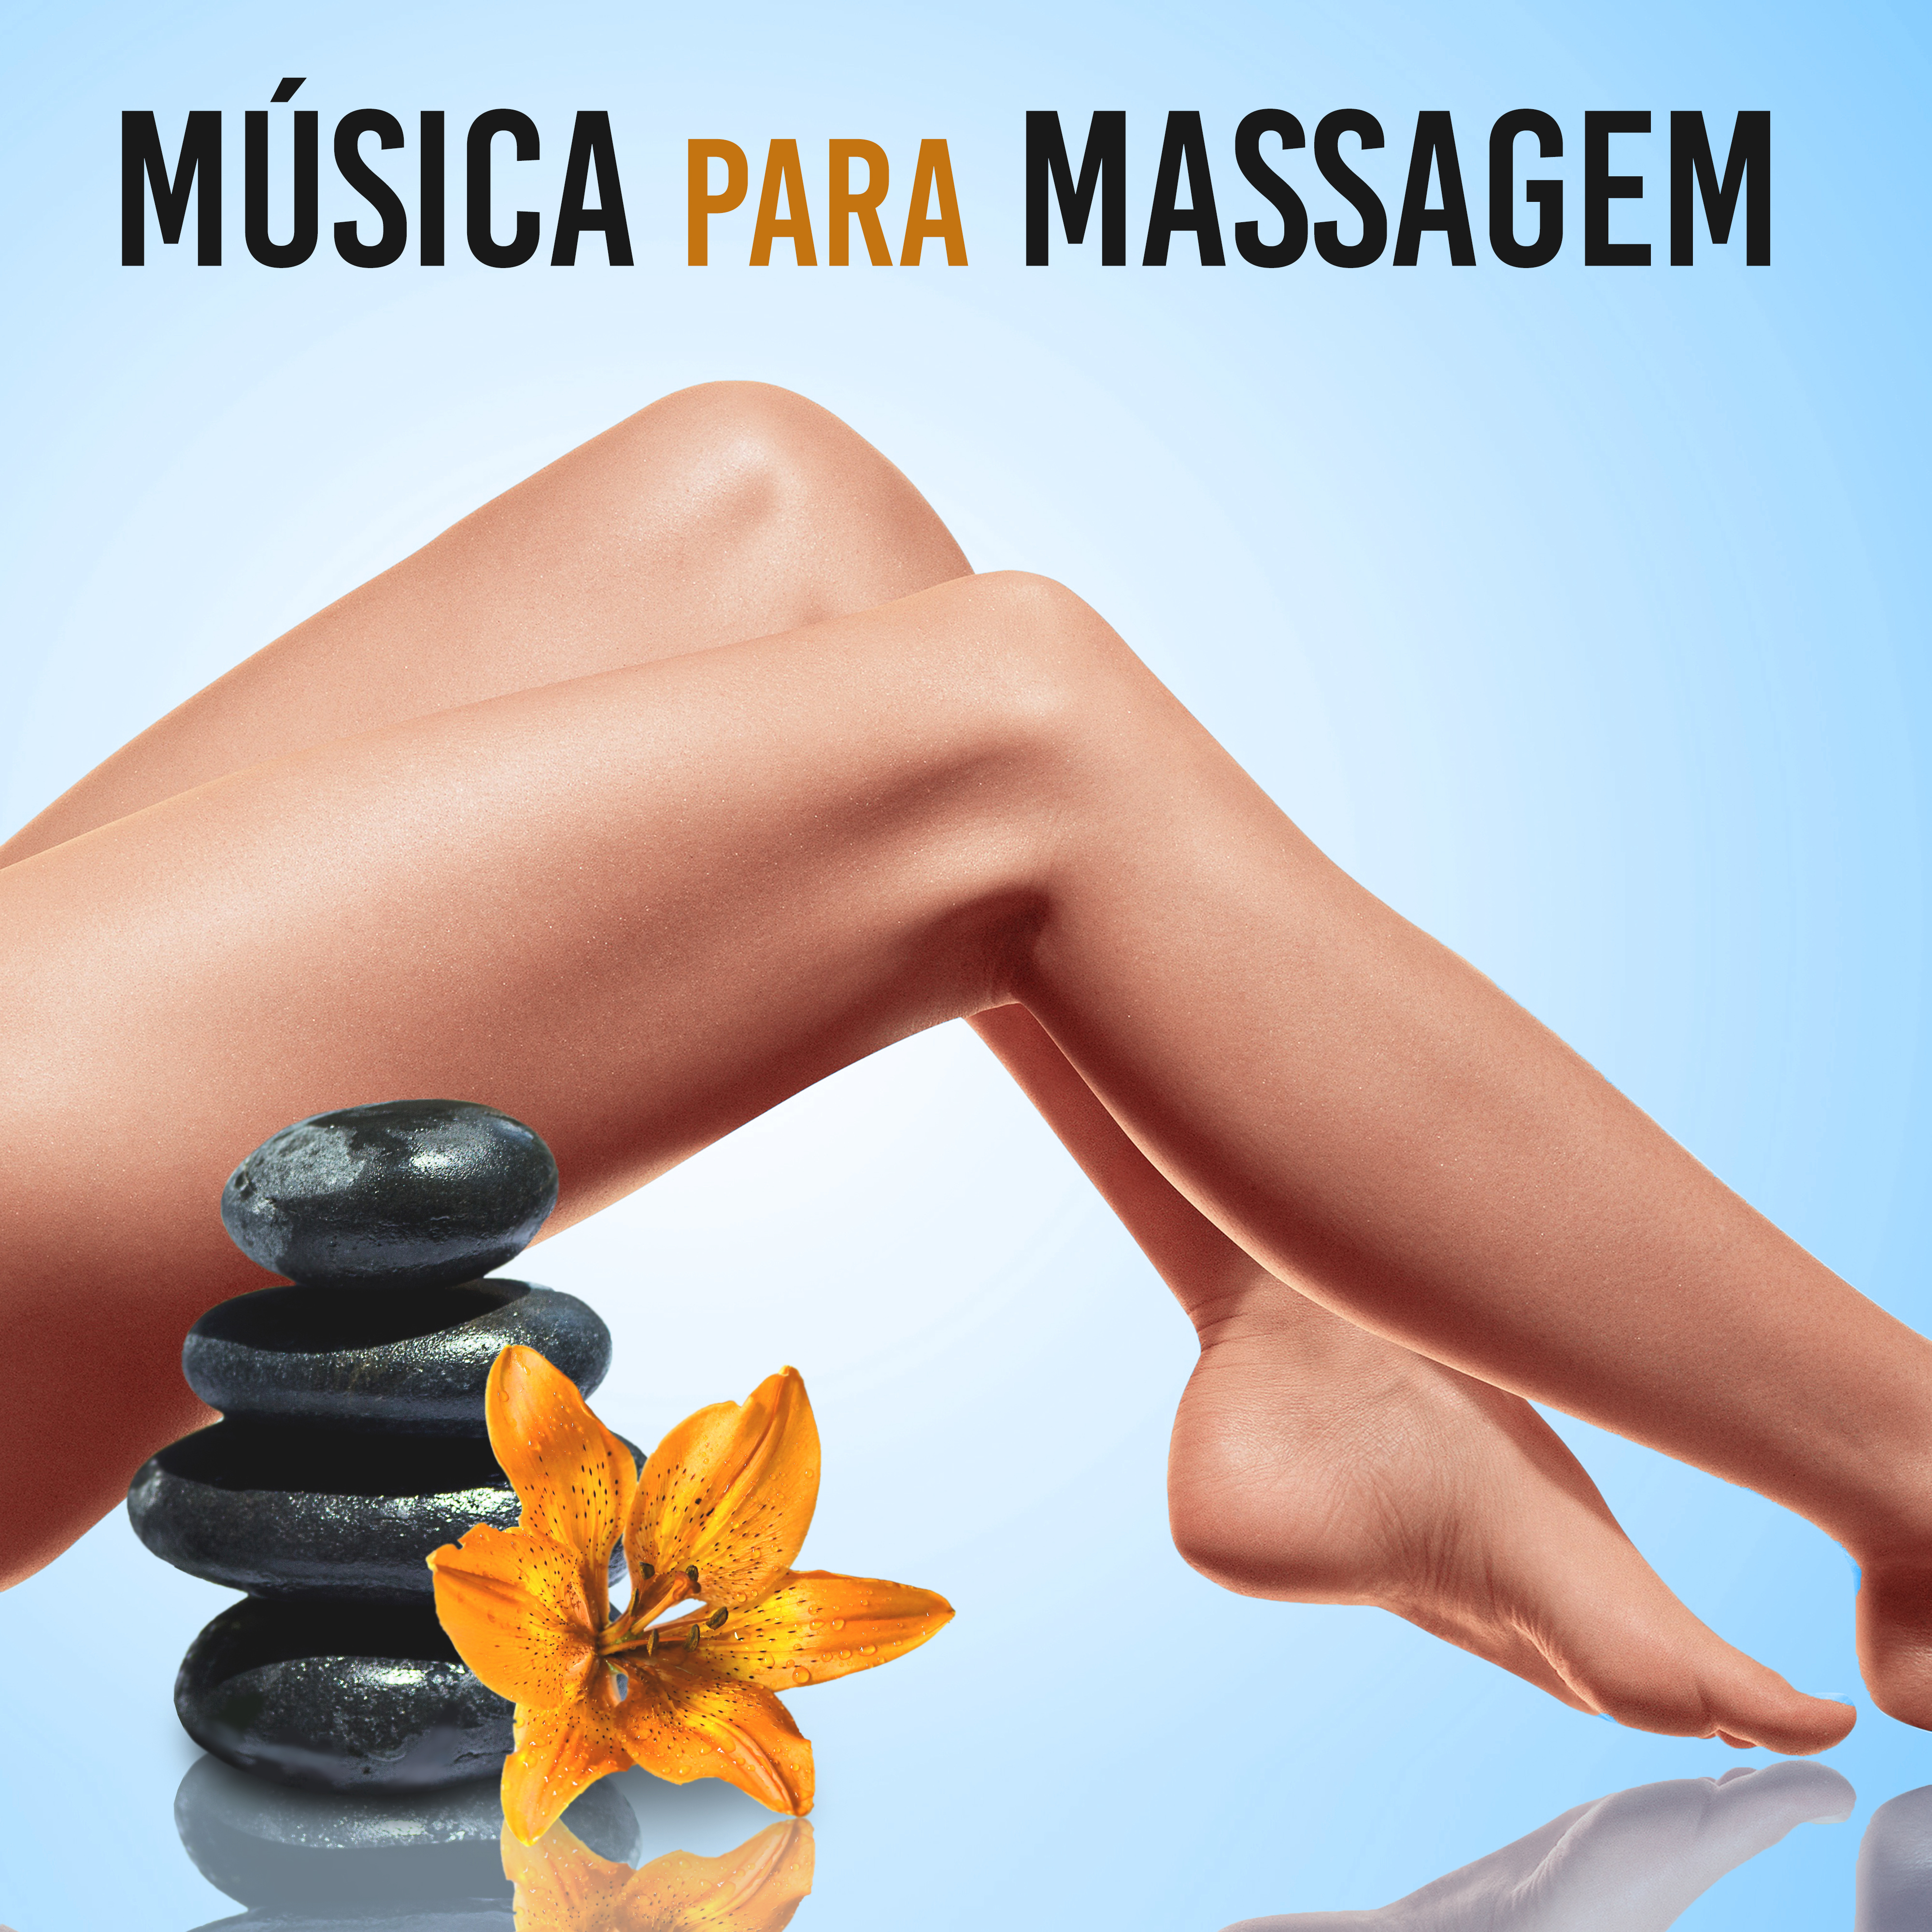 Música para Massagem - Melhor Música Relaxante Para Massagem, Spa, Sono, Relaxamento Completo